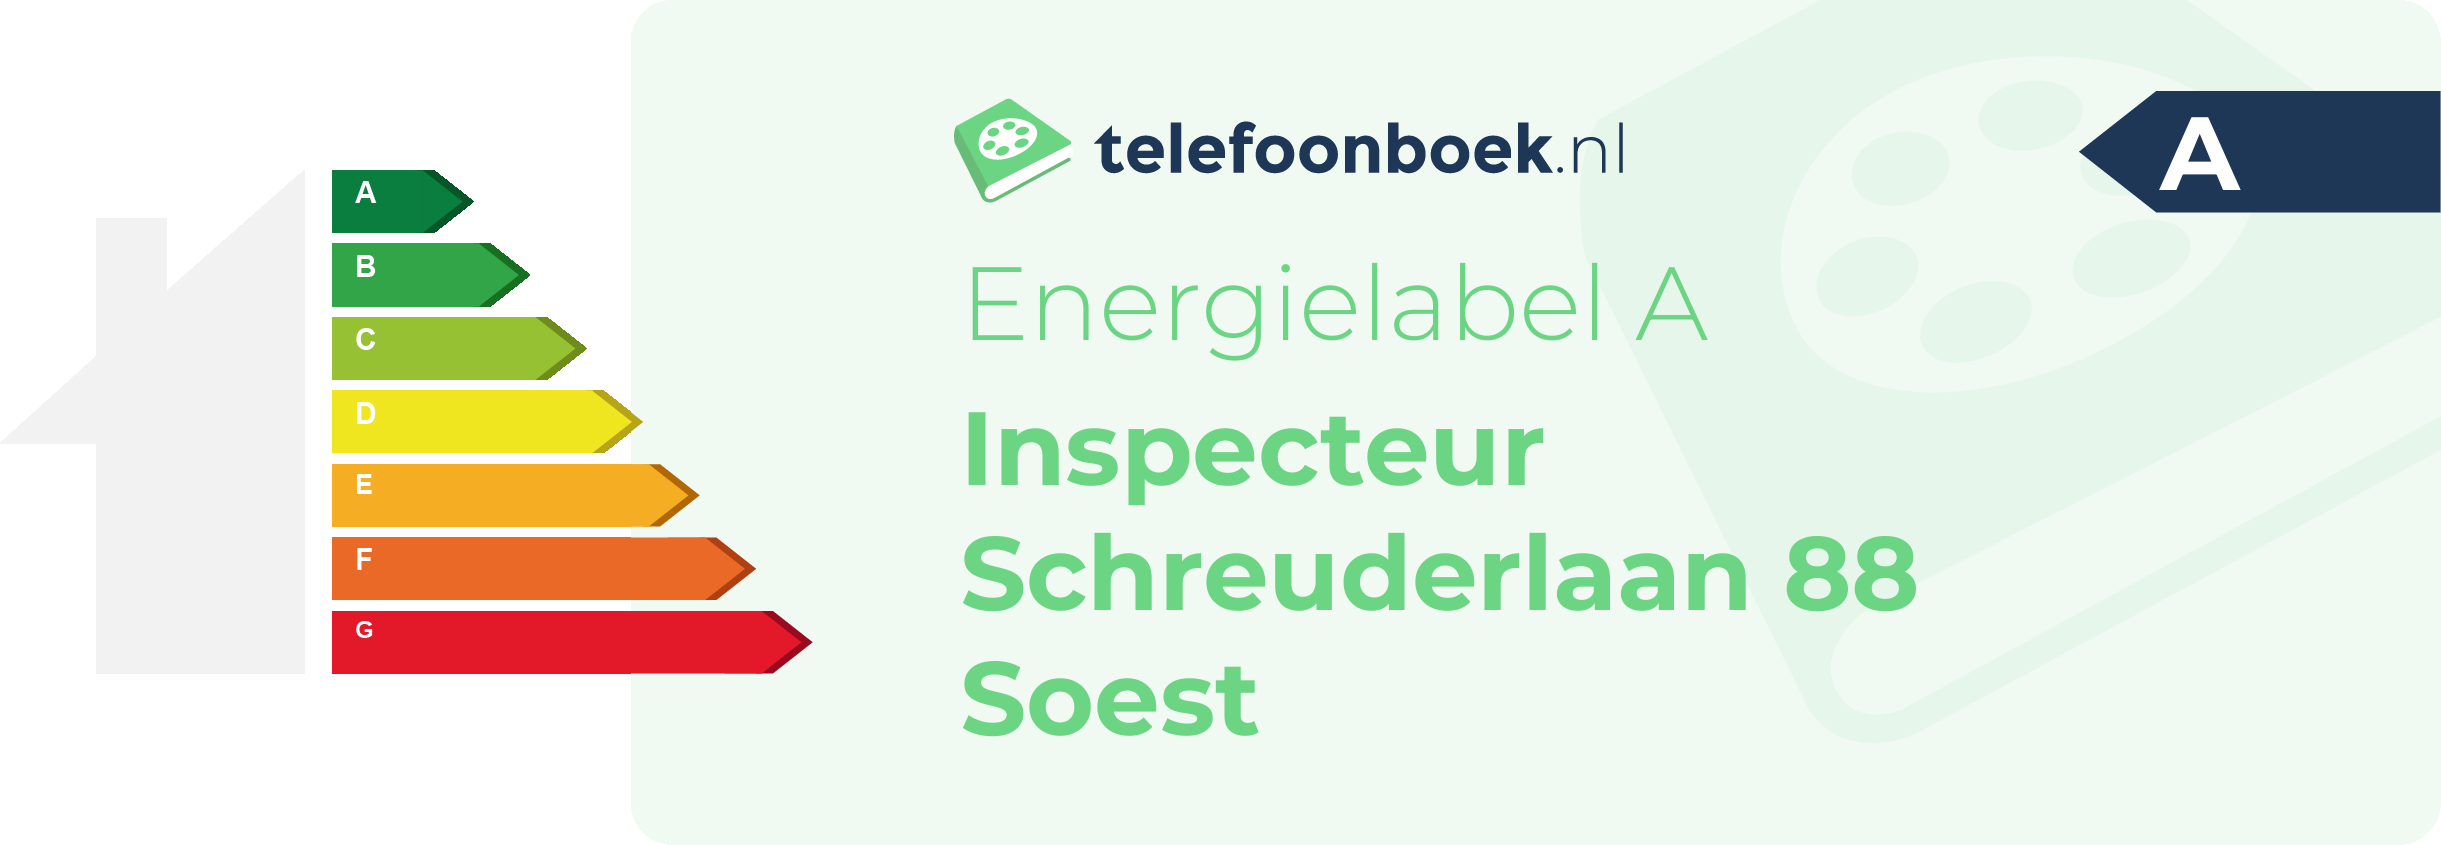 Energielabel Inspecteur Schreuderlaan 88 Soest